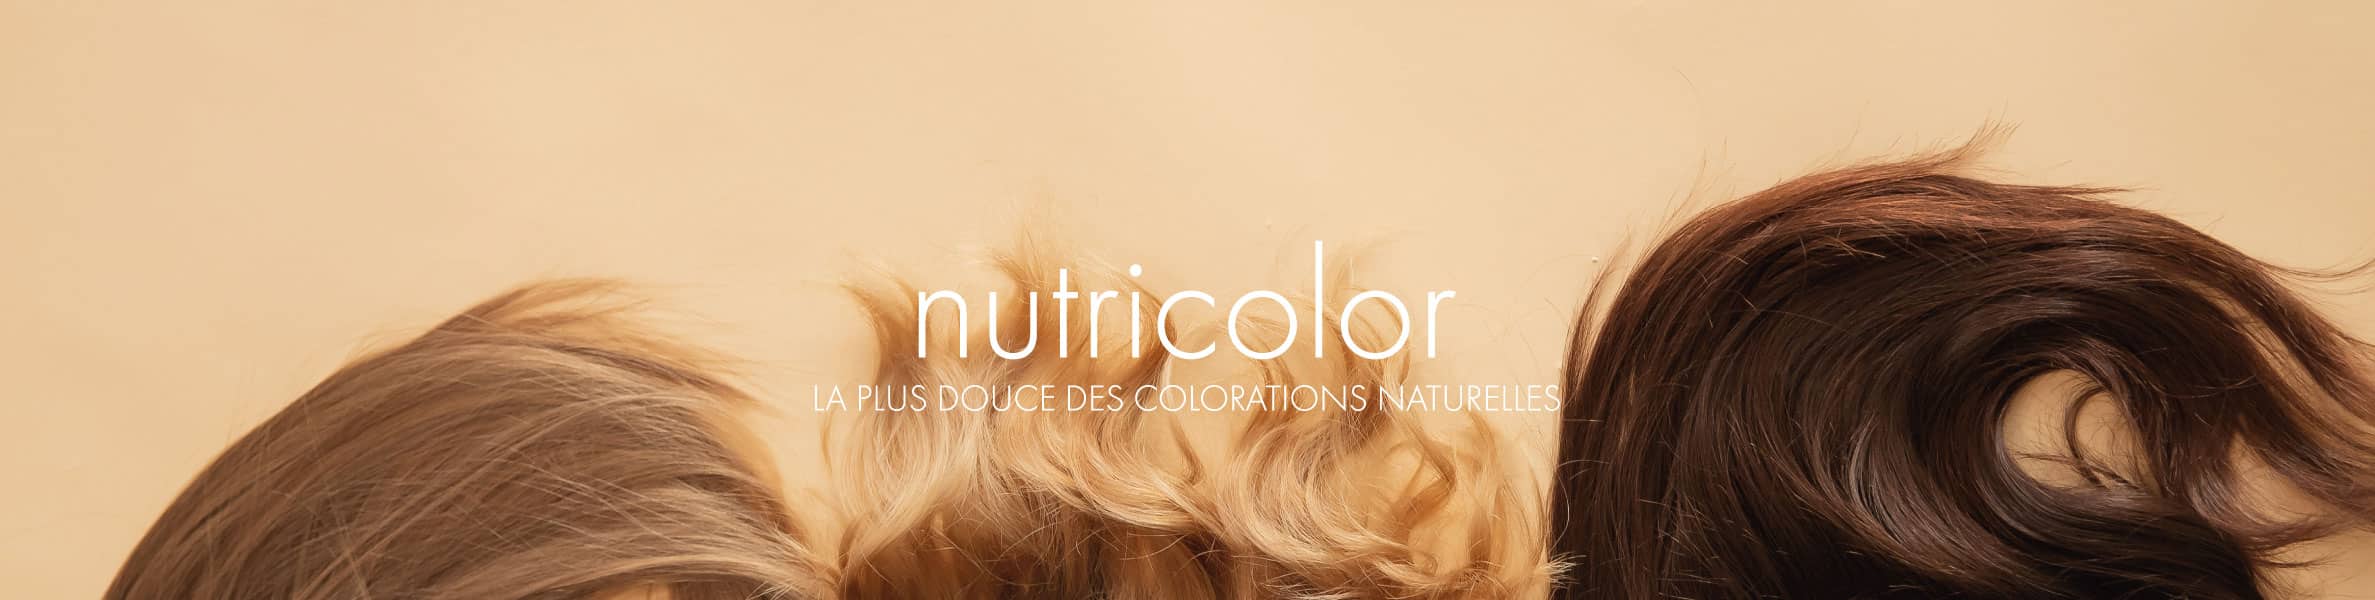 Biokap nutricolor, la plus douce des colorations naturelles